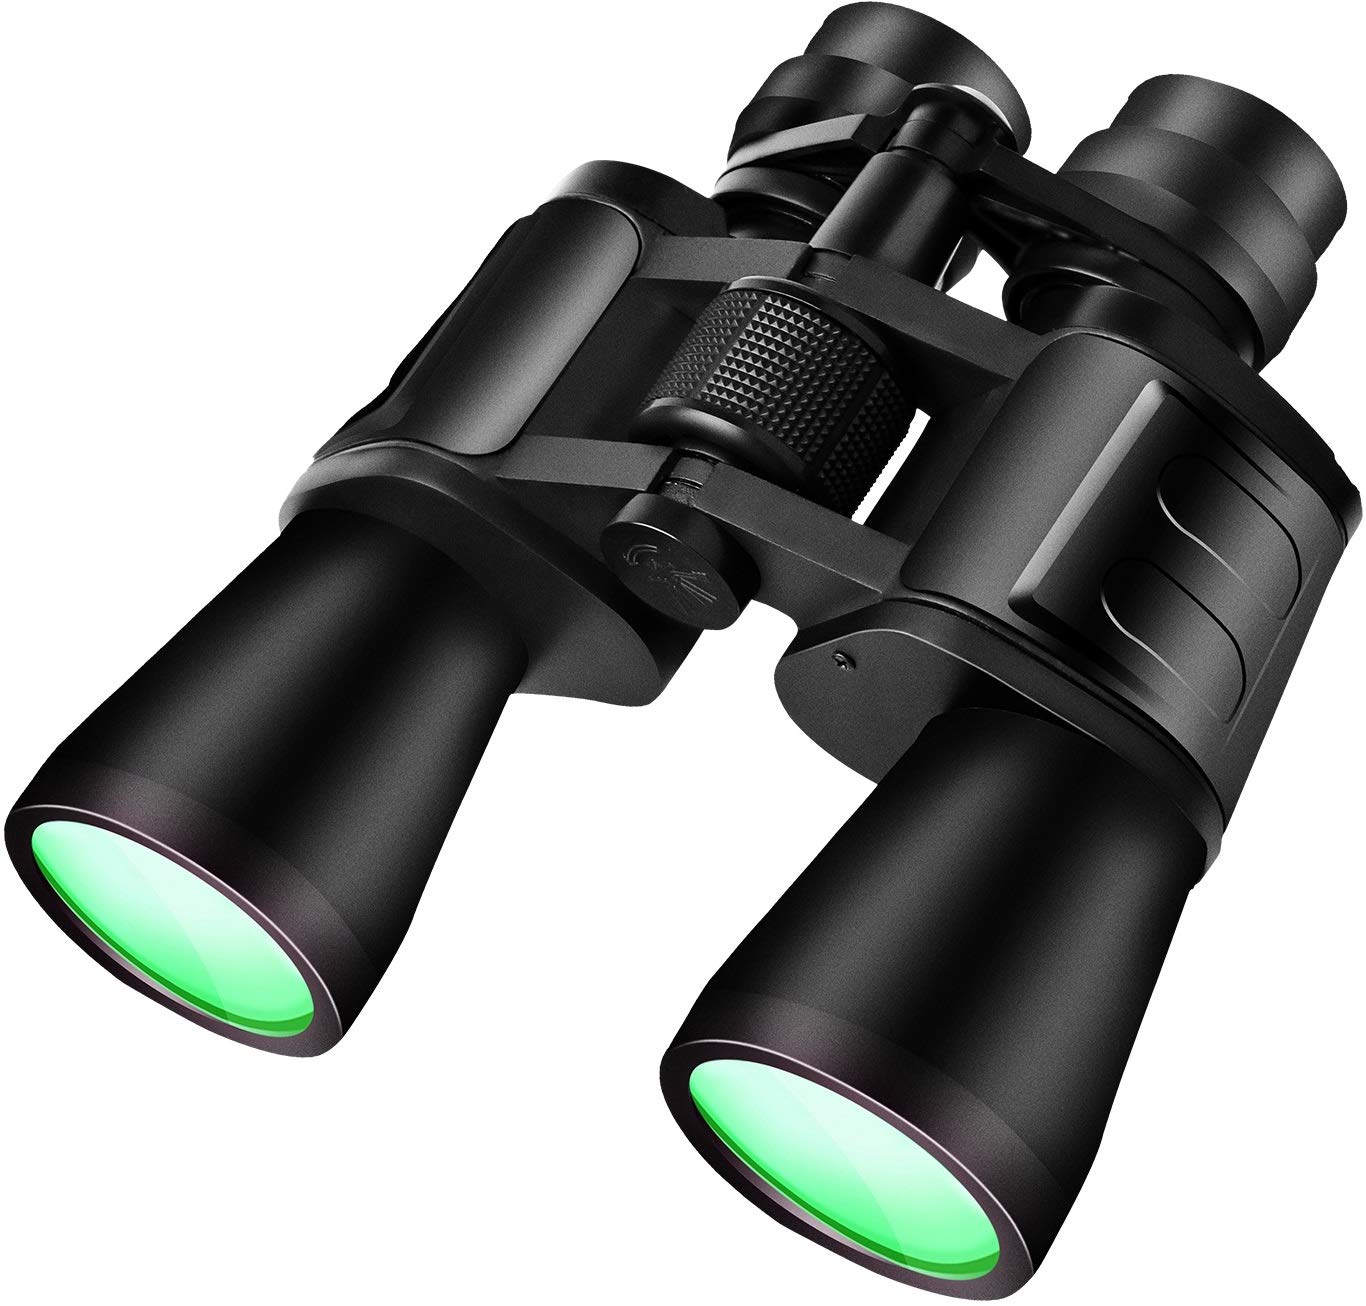 What are binoculars?